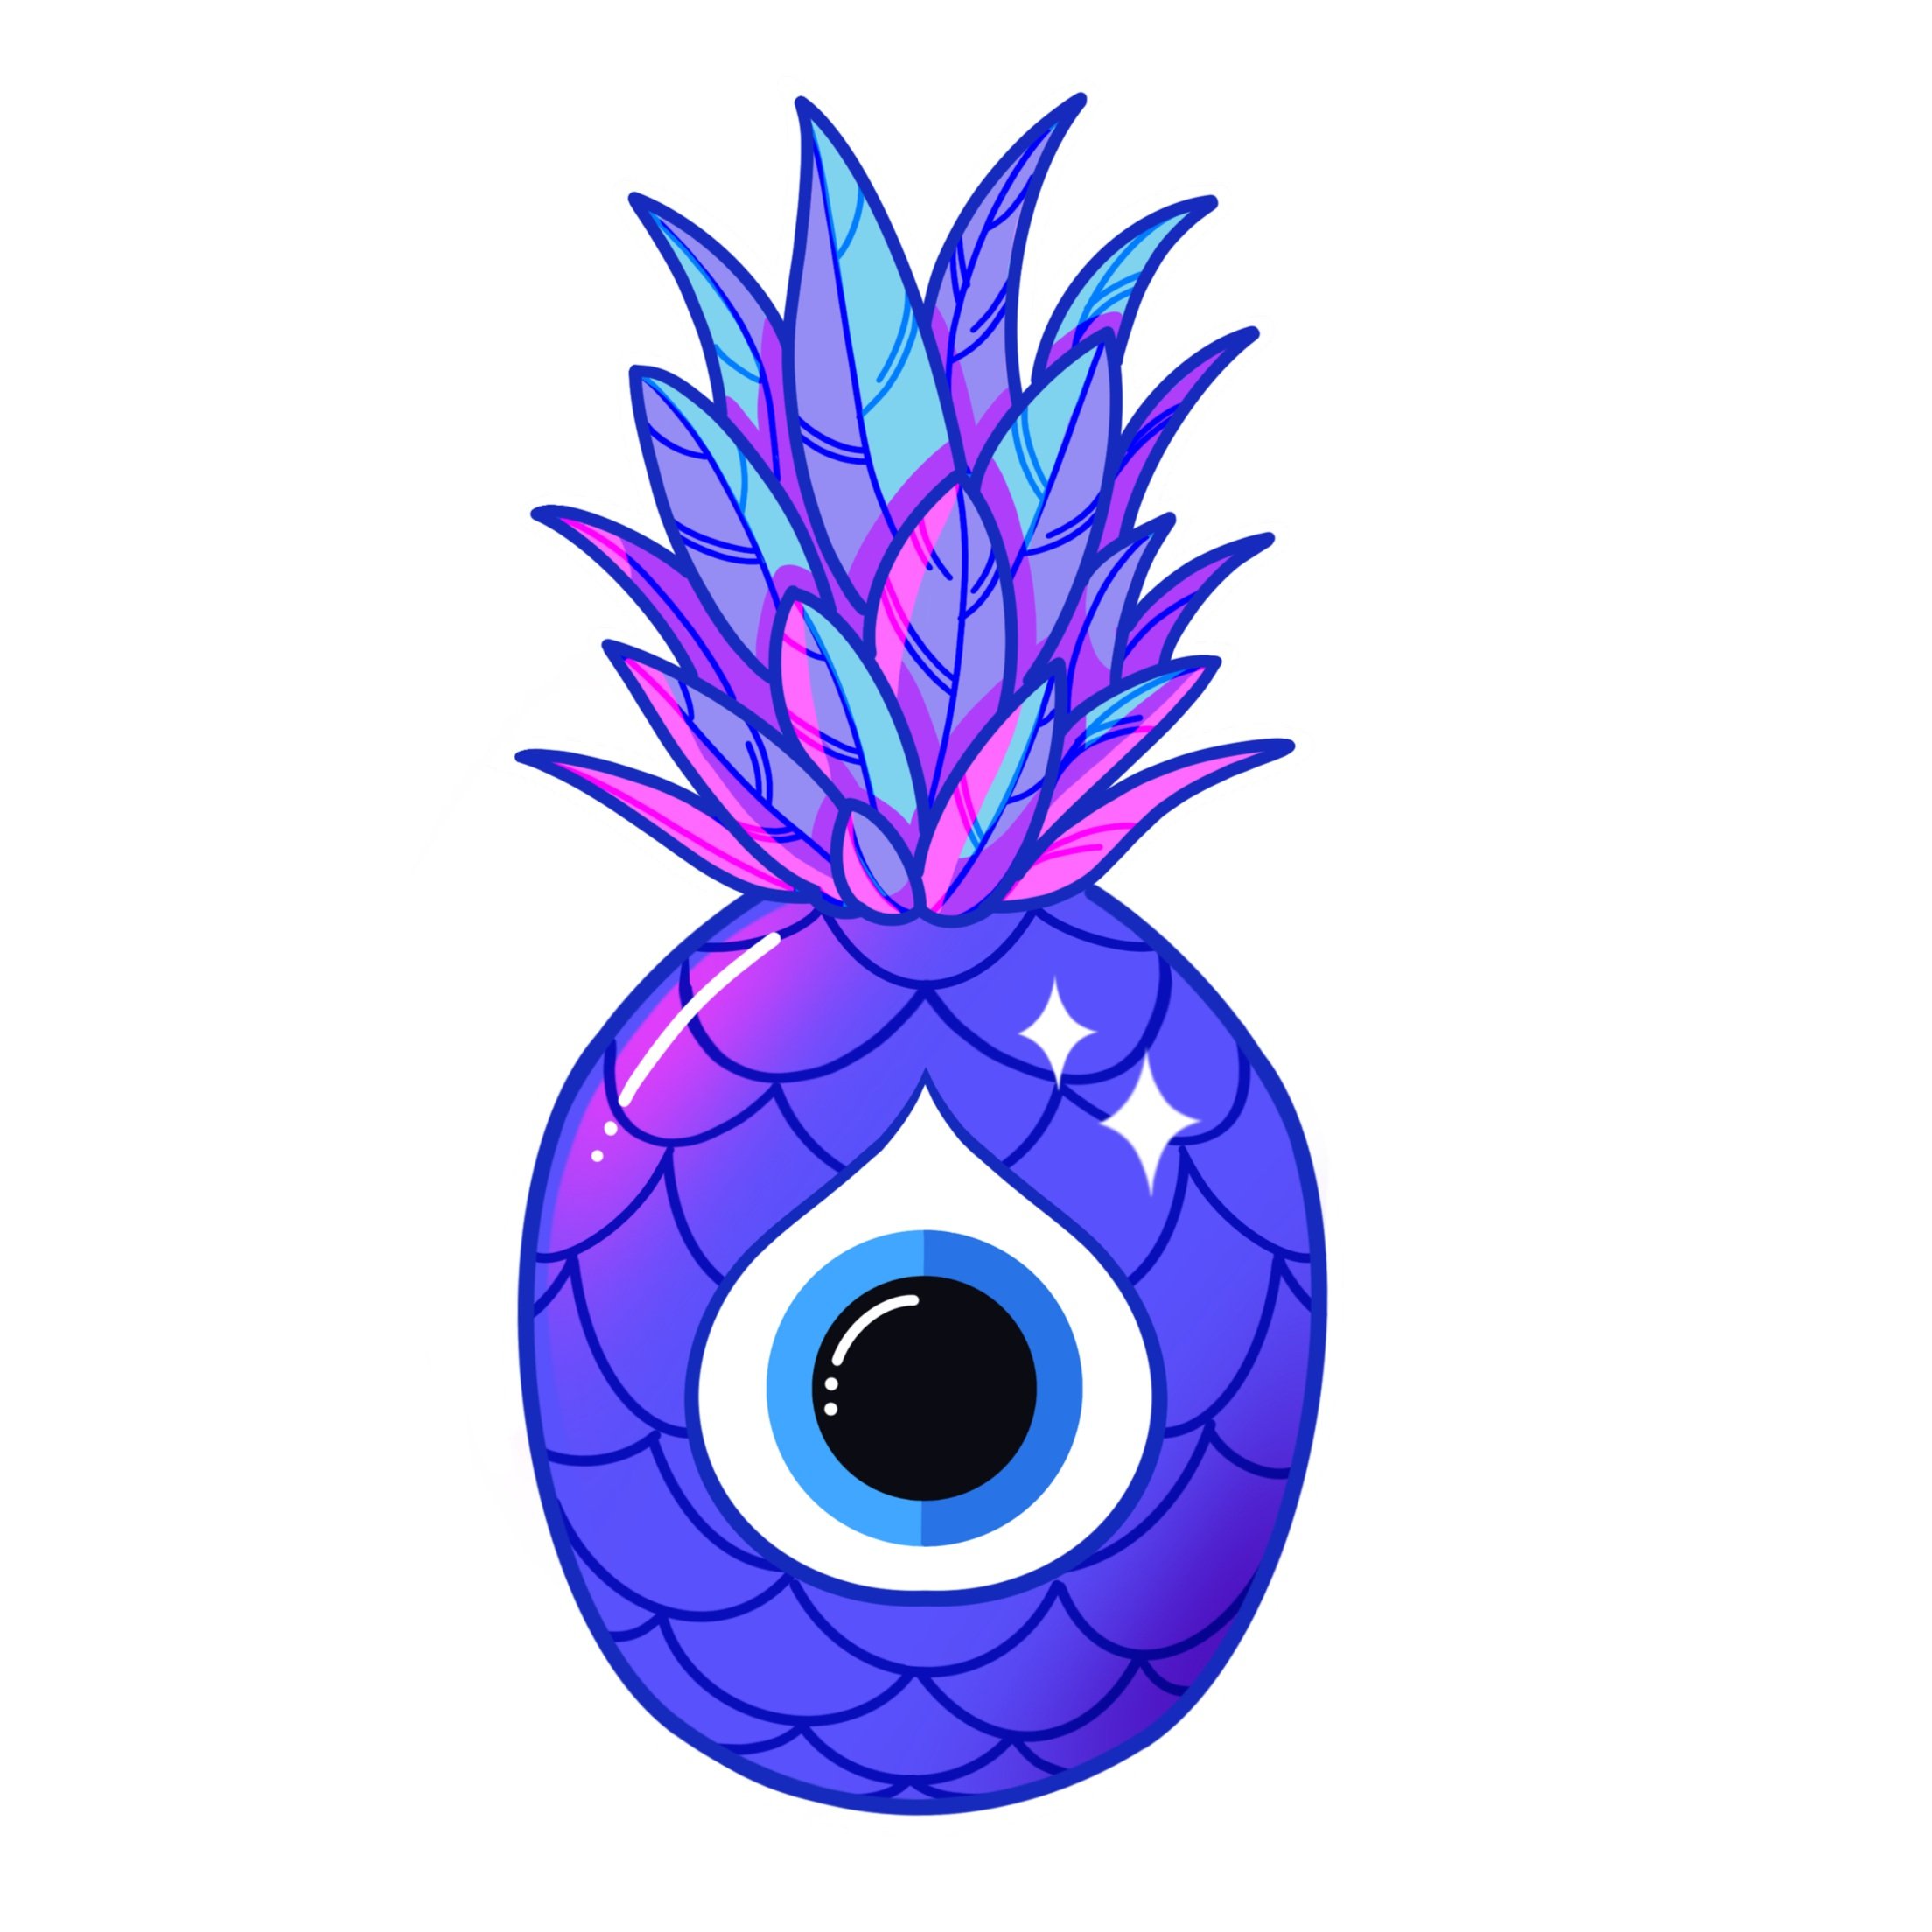 Pineapple_Evil_Eye.jpg